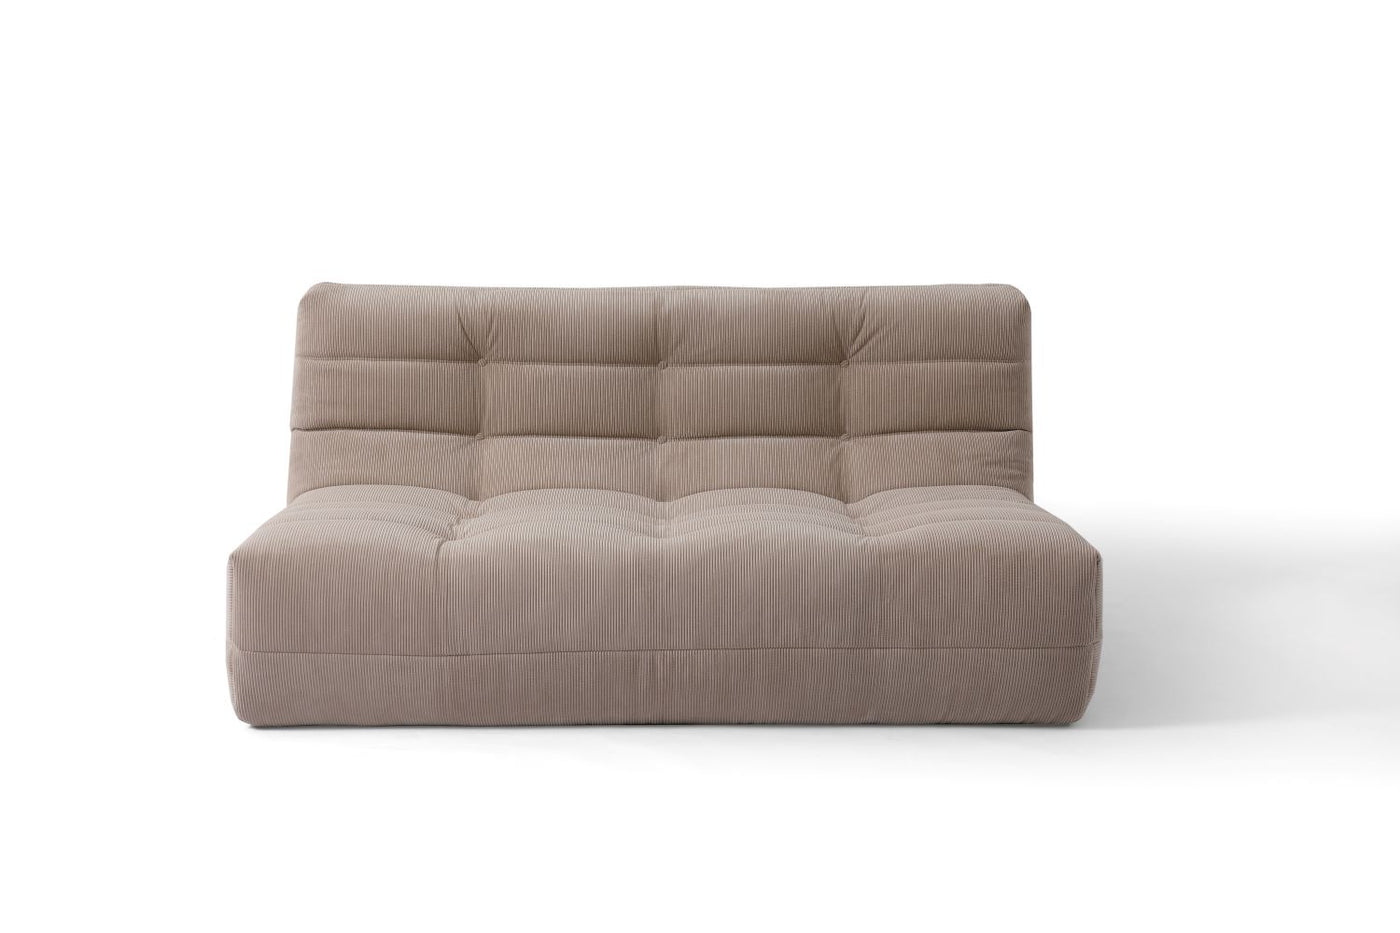 Russo2 sofa (Beige corduroy)  ( Floor model )